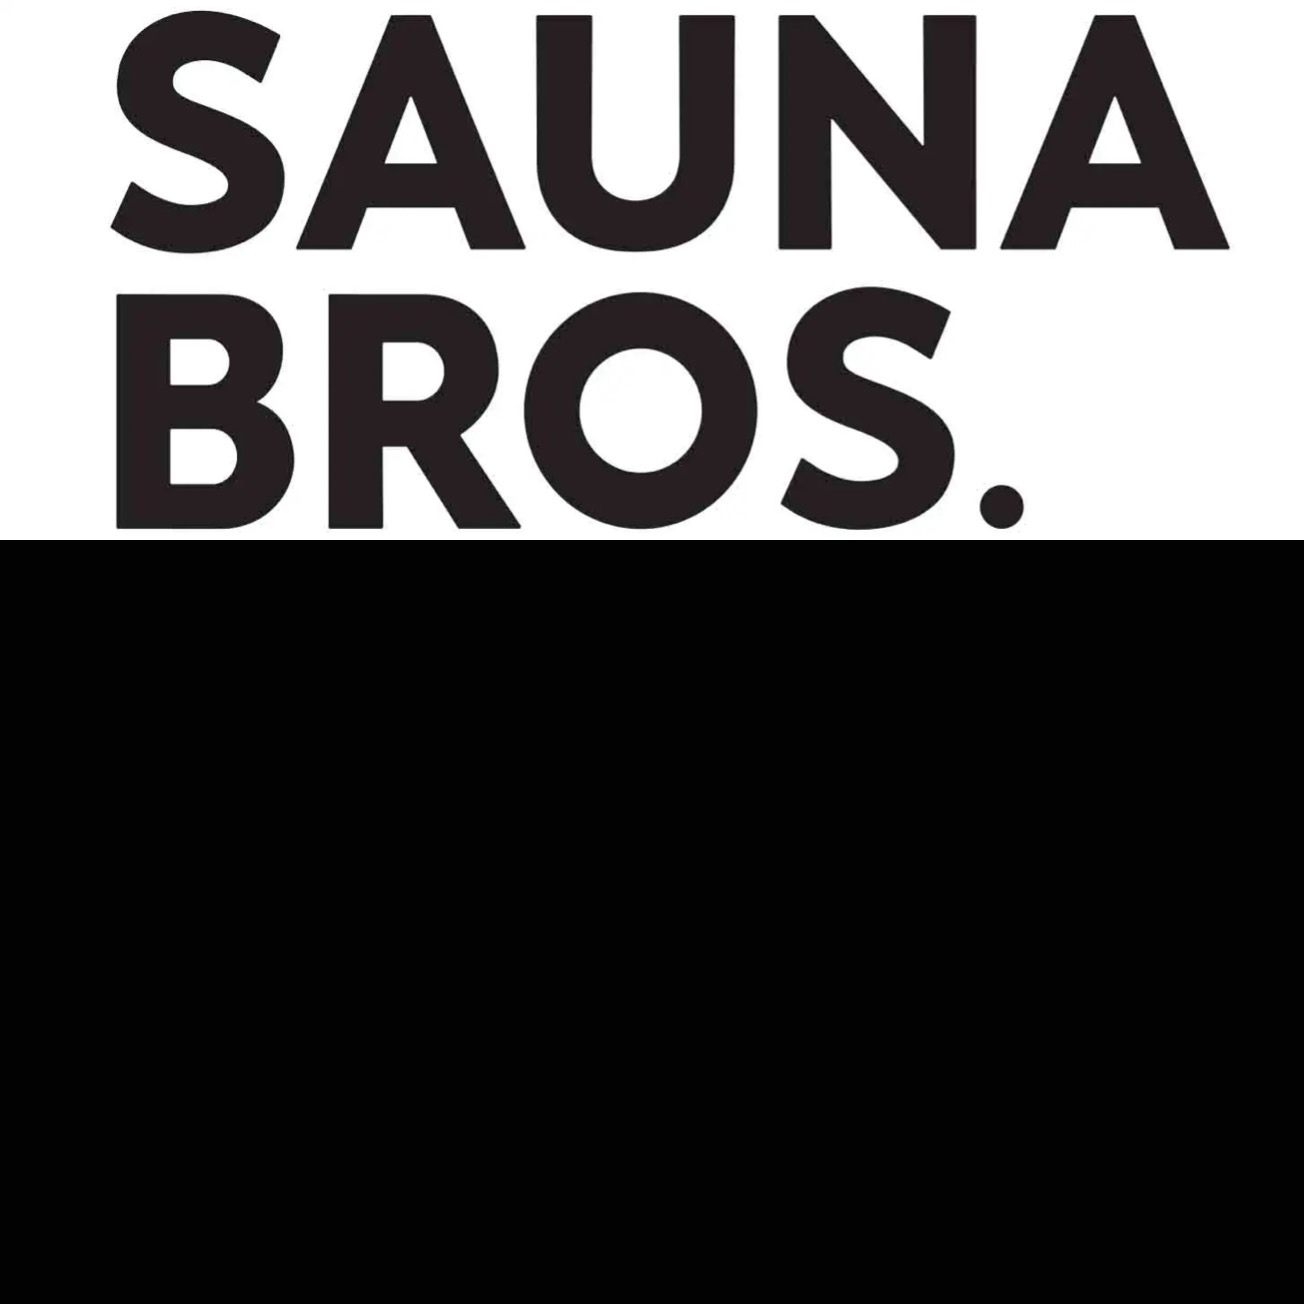 SAUNA BROS.vol.5が12月20日に発売決定！ サウナの最新トレンドから、ローカルに愛される銭湯サウナまで幅広くディープに紹介